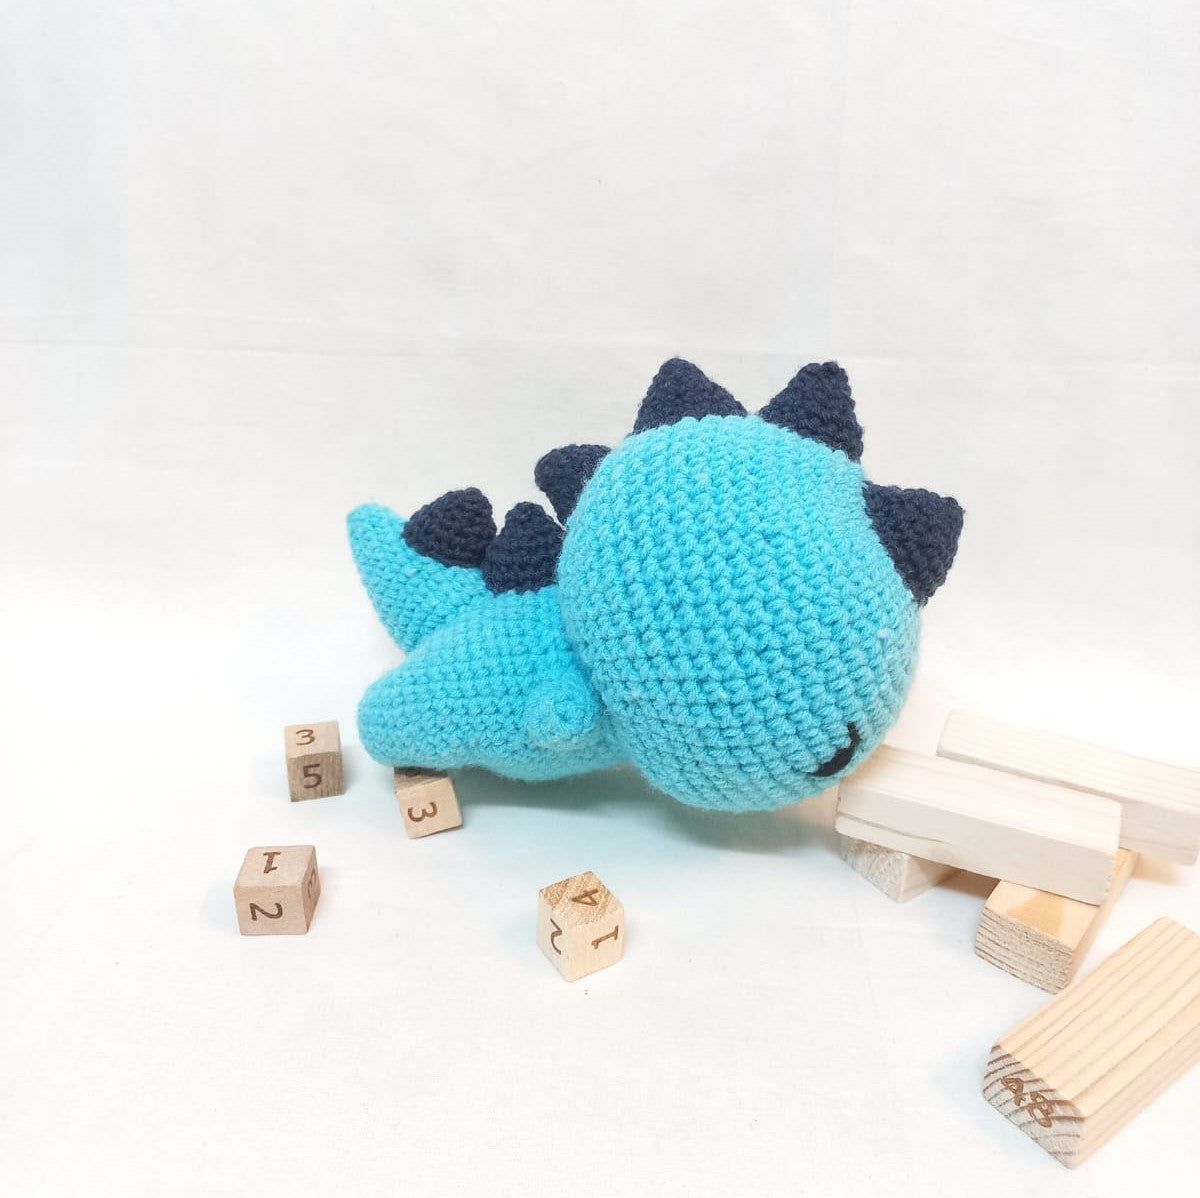 Stegosaurus Turtle Amigurumi Soft Toy - A Cute and Cuddly Prehistoric Friend